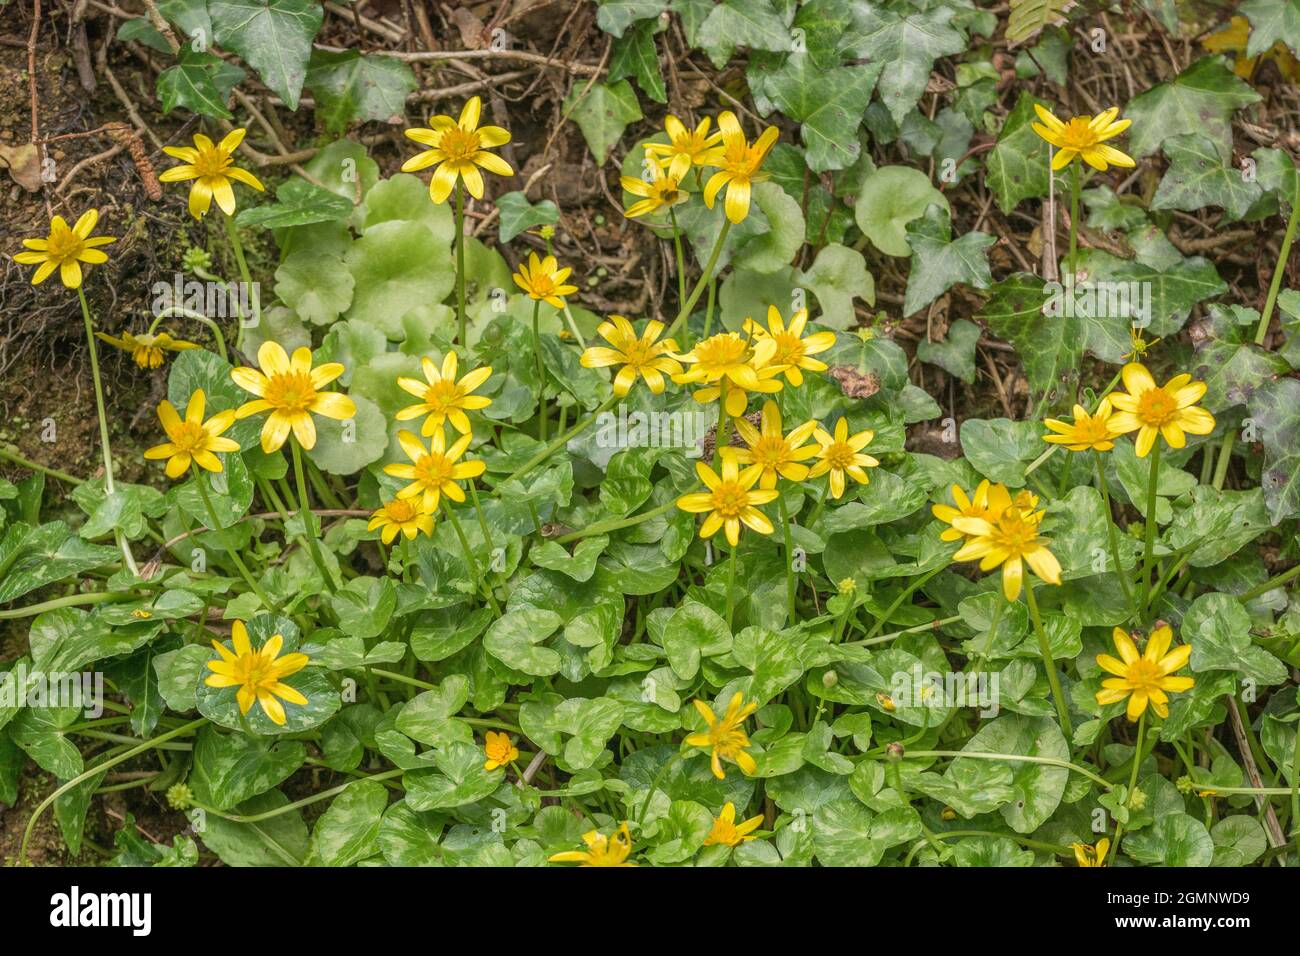 Gelb geblüht kleine Celandine / Ranunculs ficaria / Ficaria verna. Die Form der Wurzelknolle gab den Namen von Feigenkraut. Stockfoto